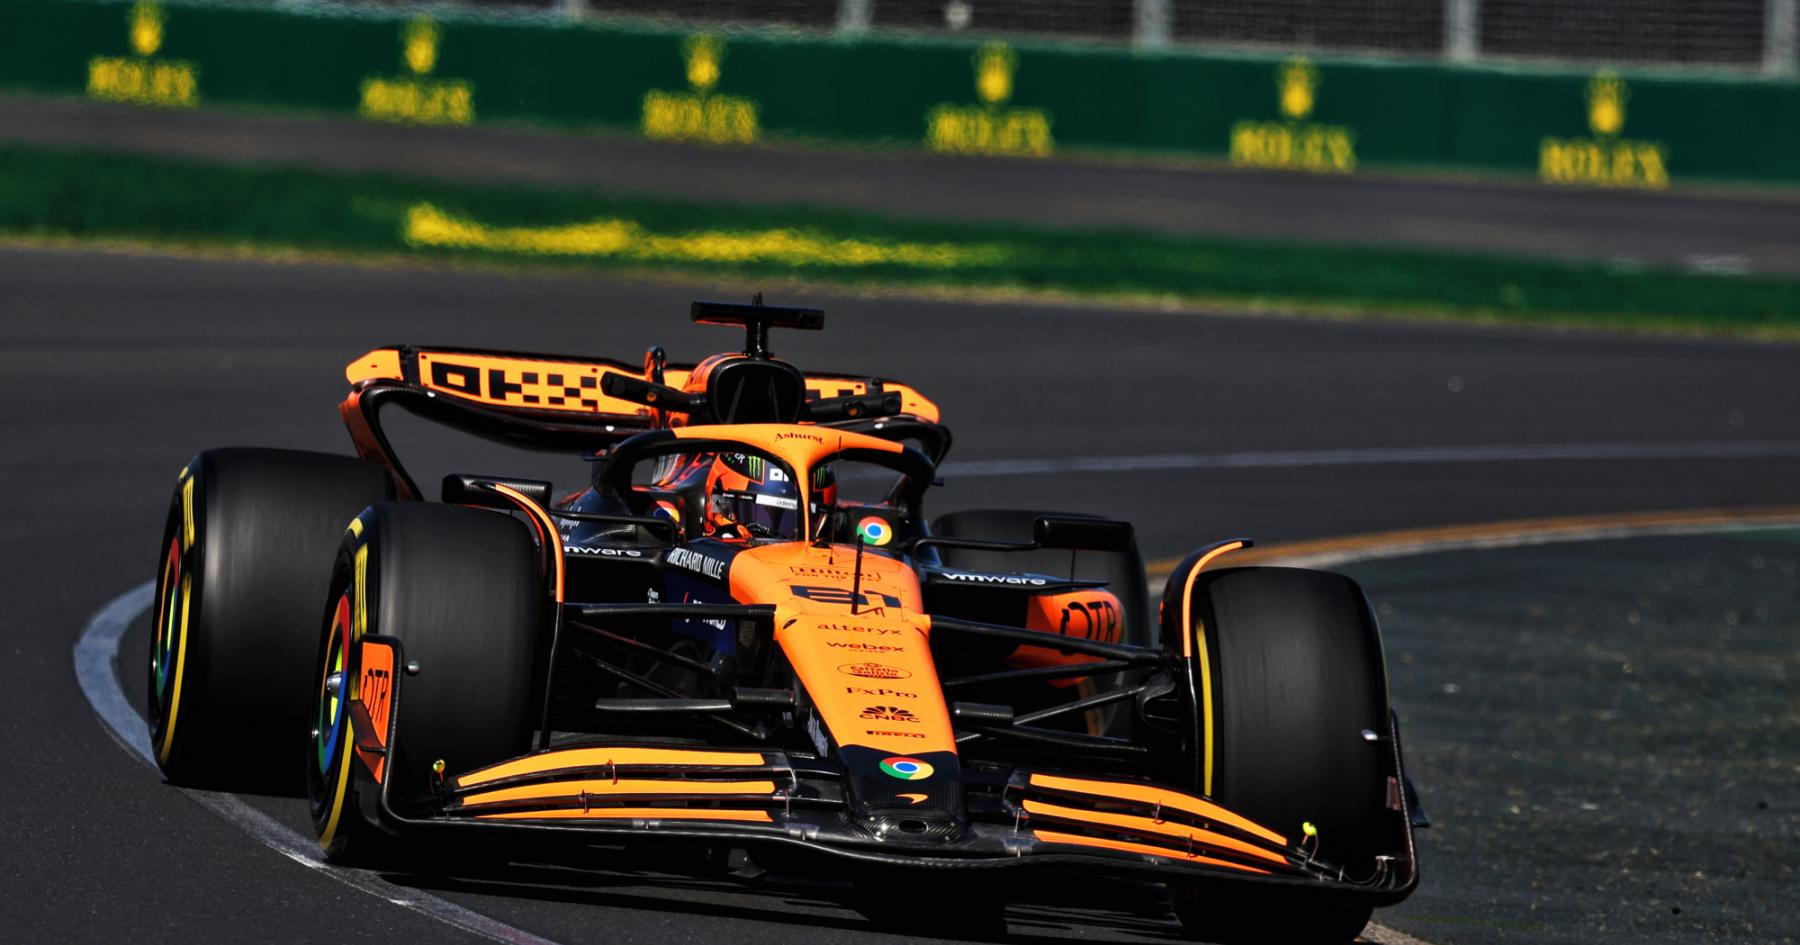 Piastri's Performance Points McLaren Towards Success in Australia Qualifying